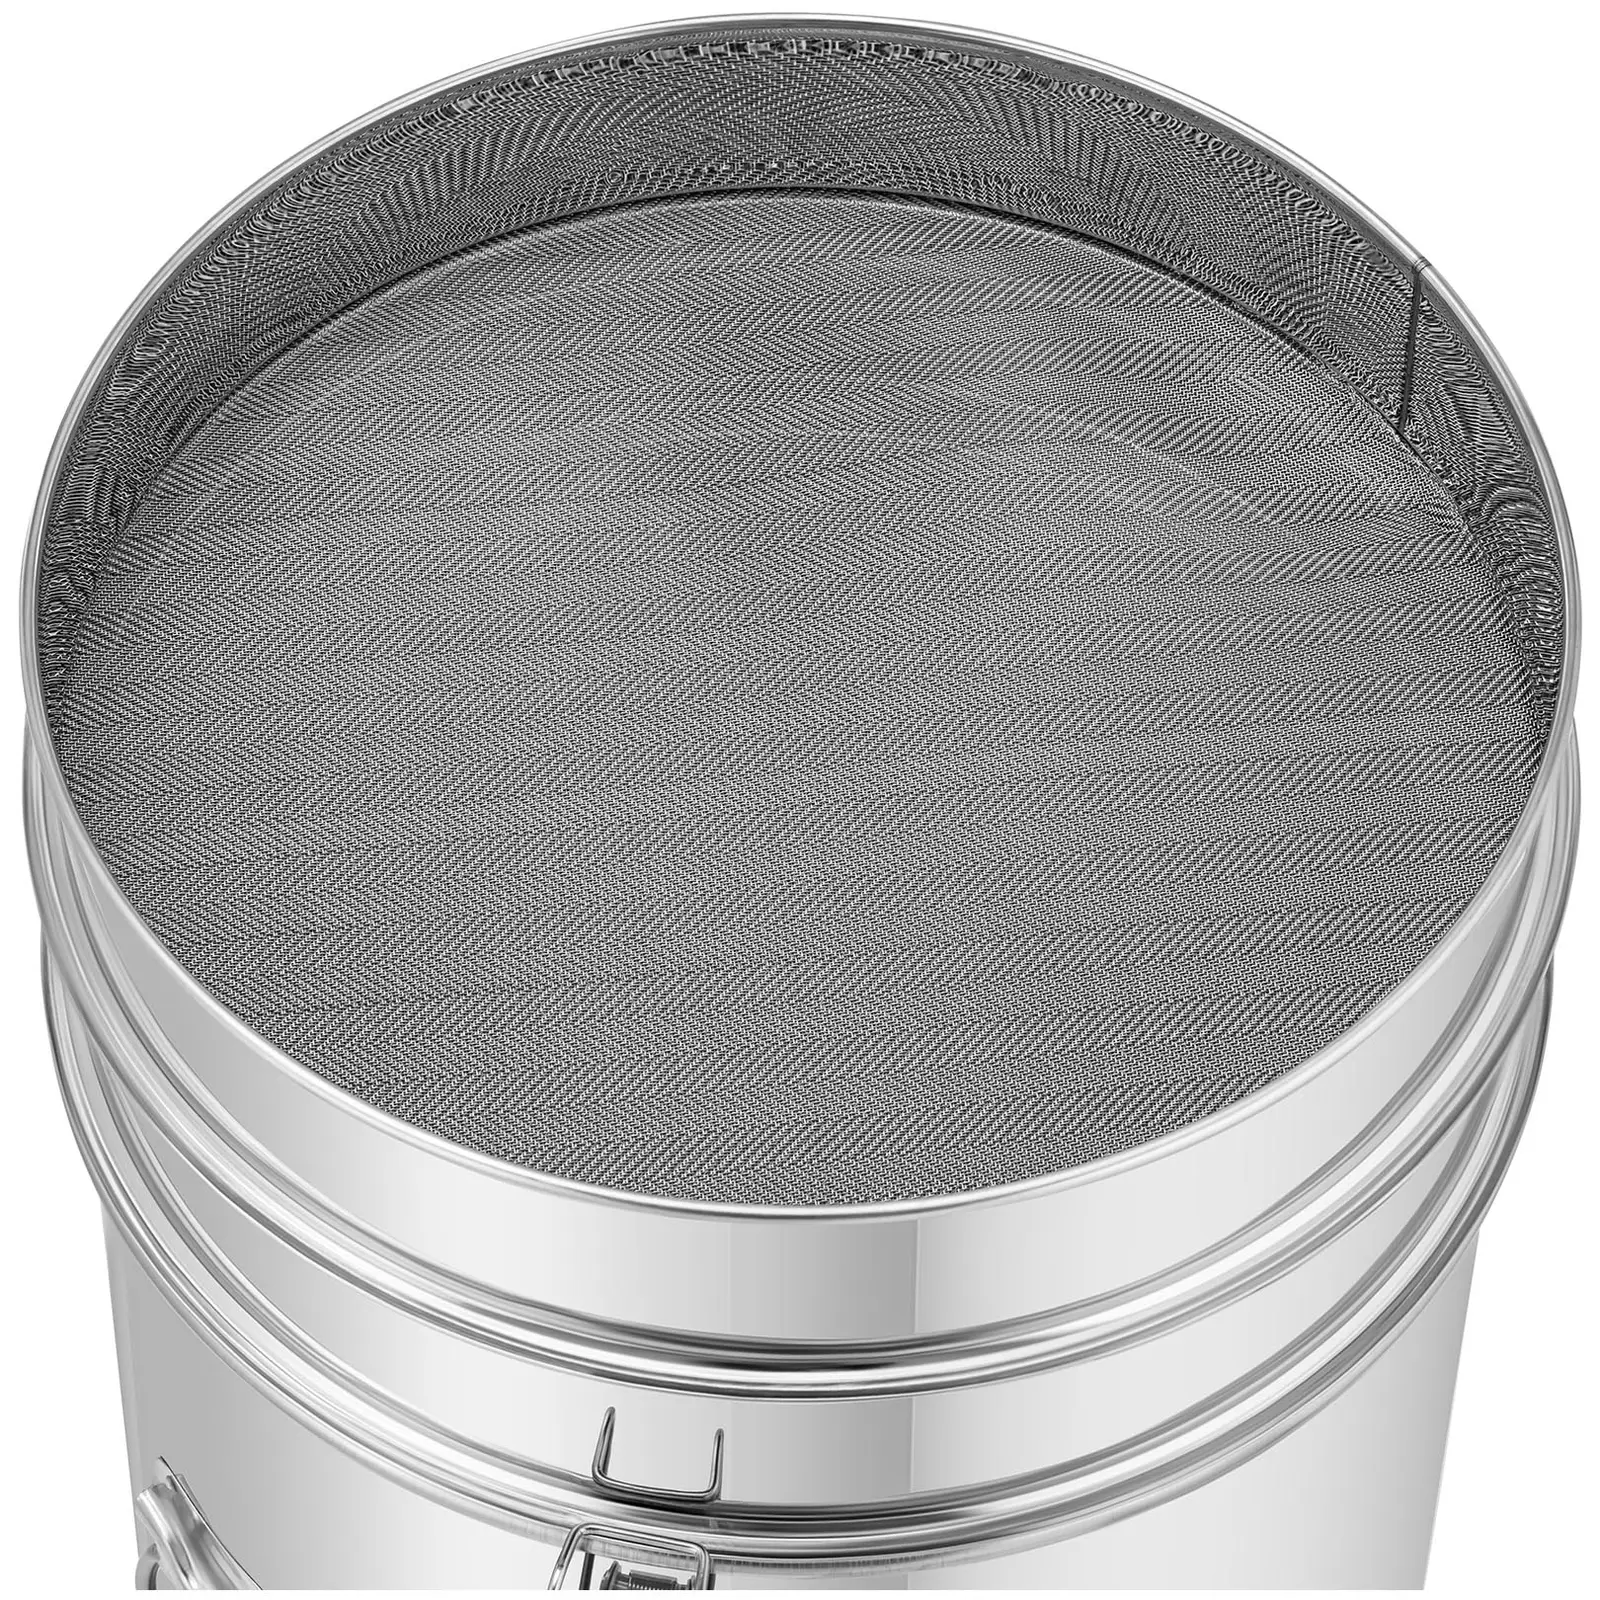 Separador de mel - 30 l - com filtro, tampa e válvula - aço inoxidável